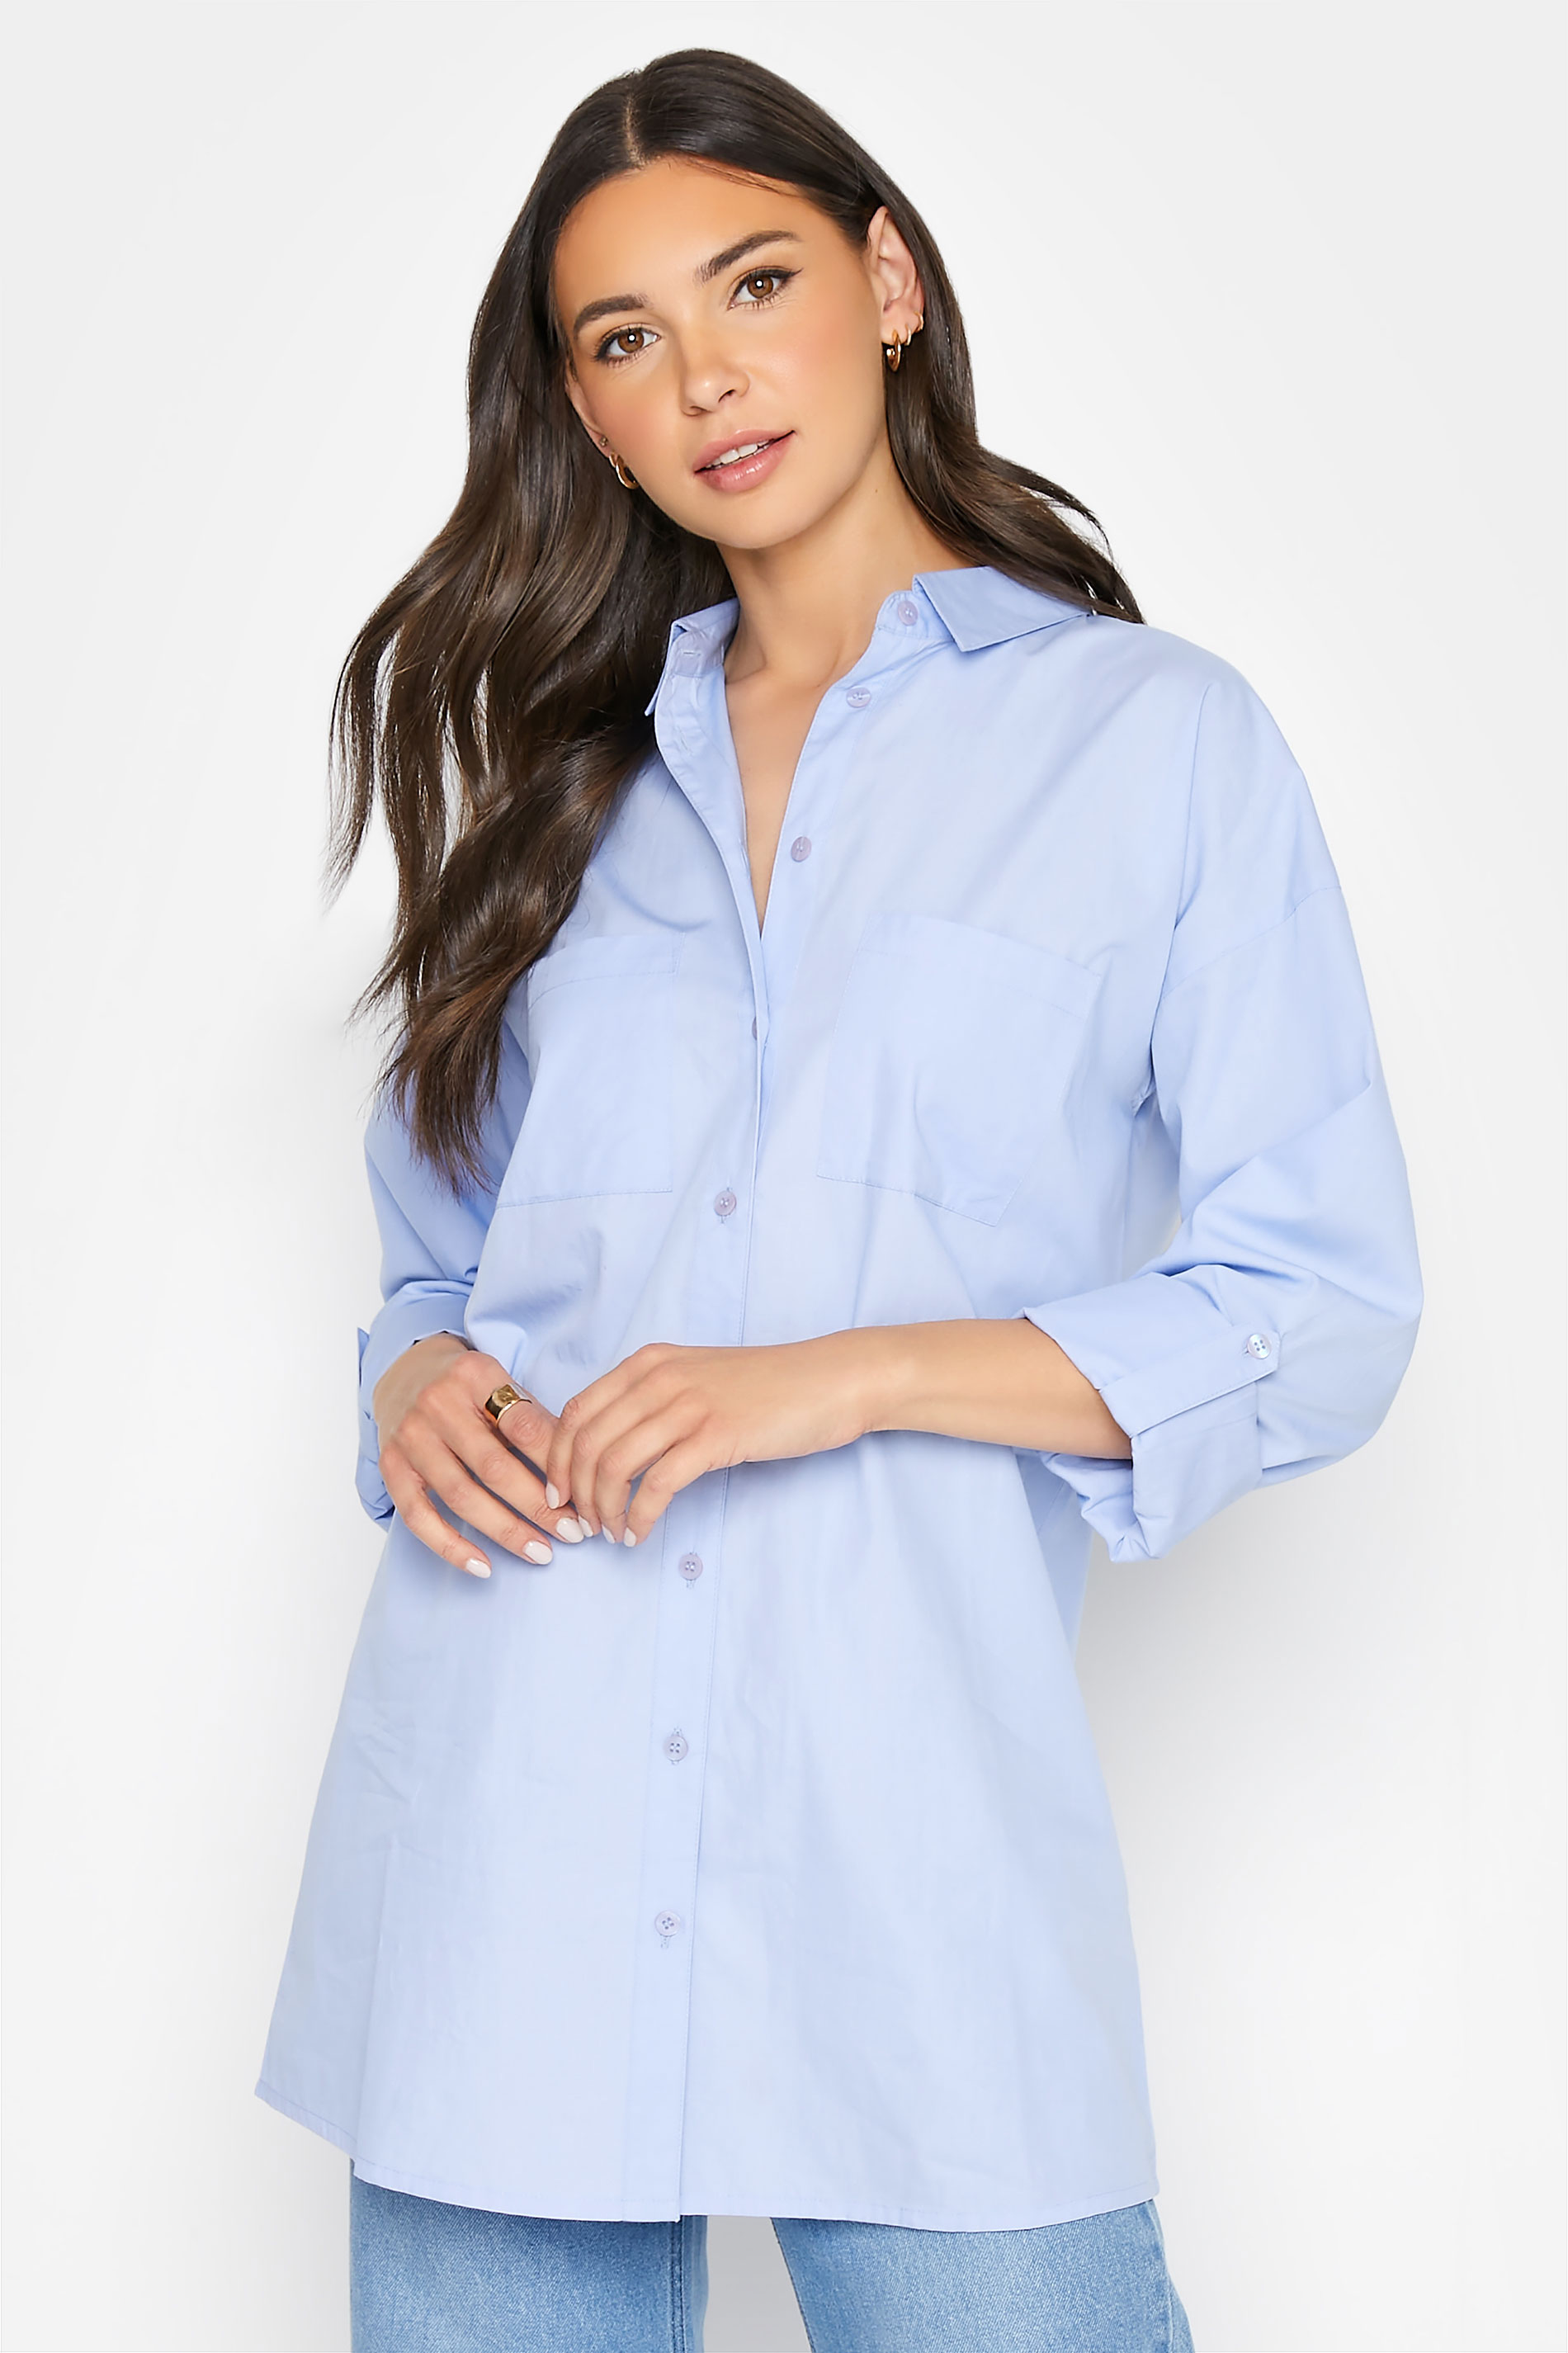 LTS MADE FOR GOOD Tall Women's Blue Cotton Oversized Shirt | Long Tall Sally 1